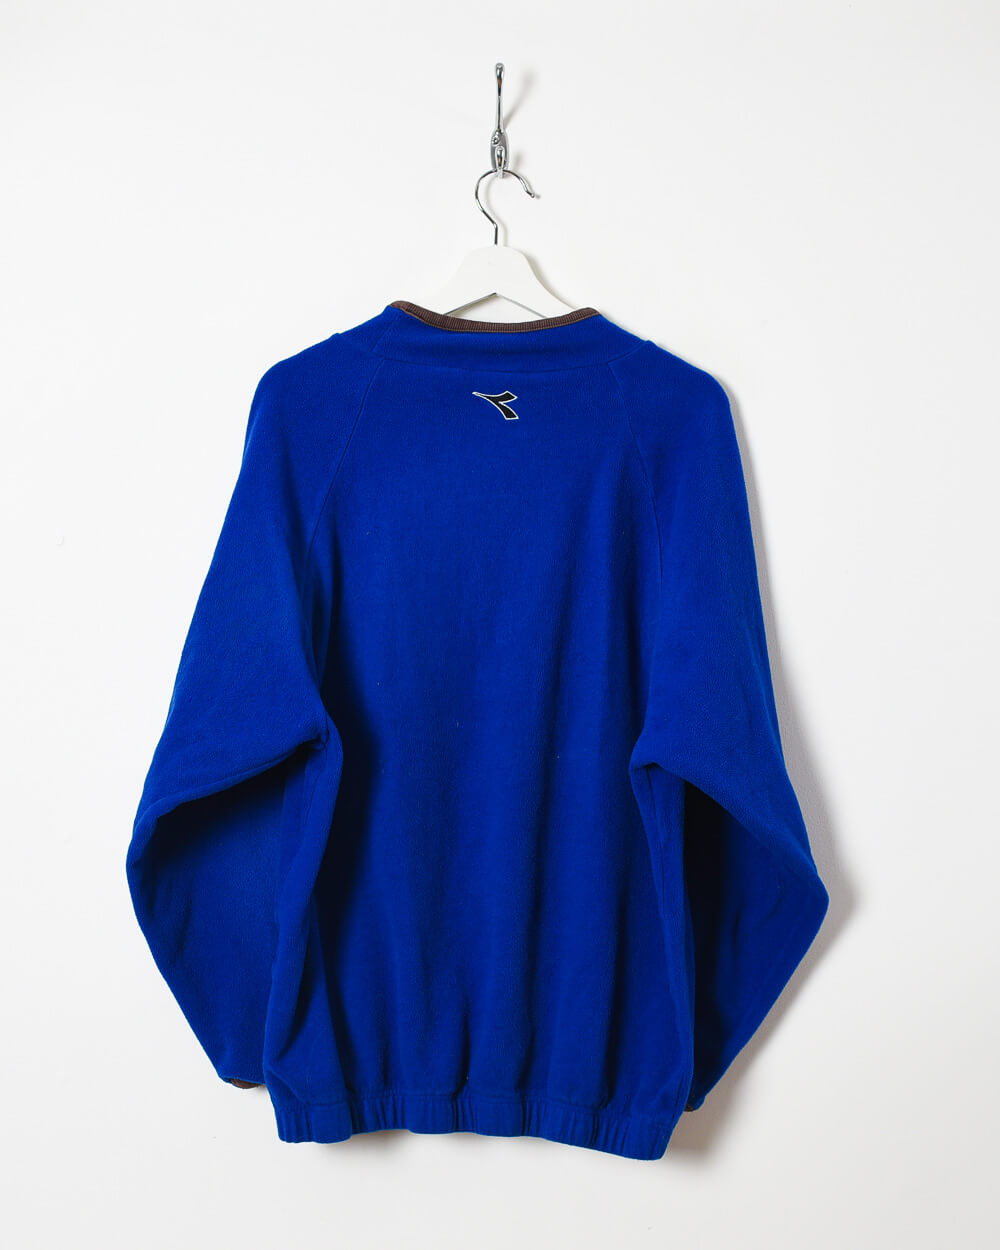 Blue Diadora Pullover Fleece - Large